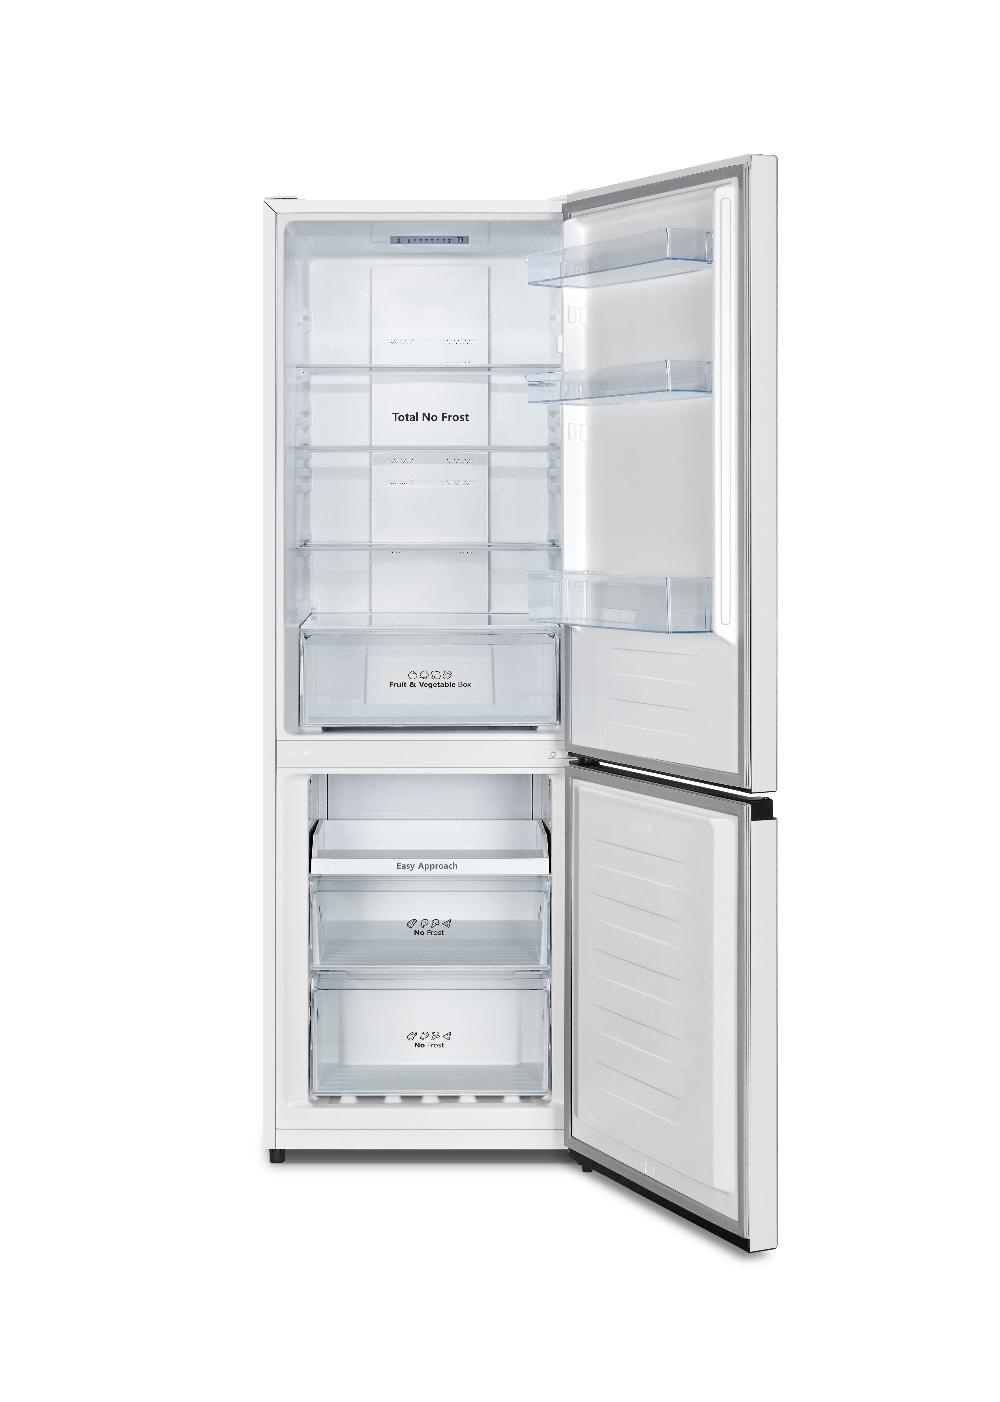 Холодильник HISENSE RB-372N4AW1